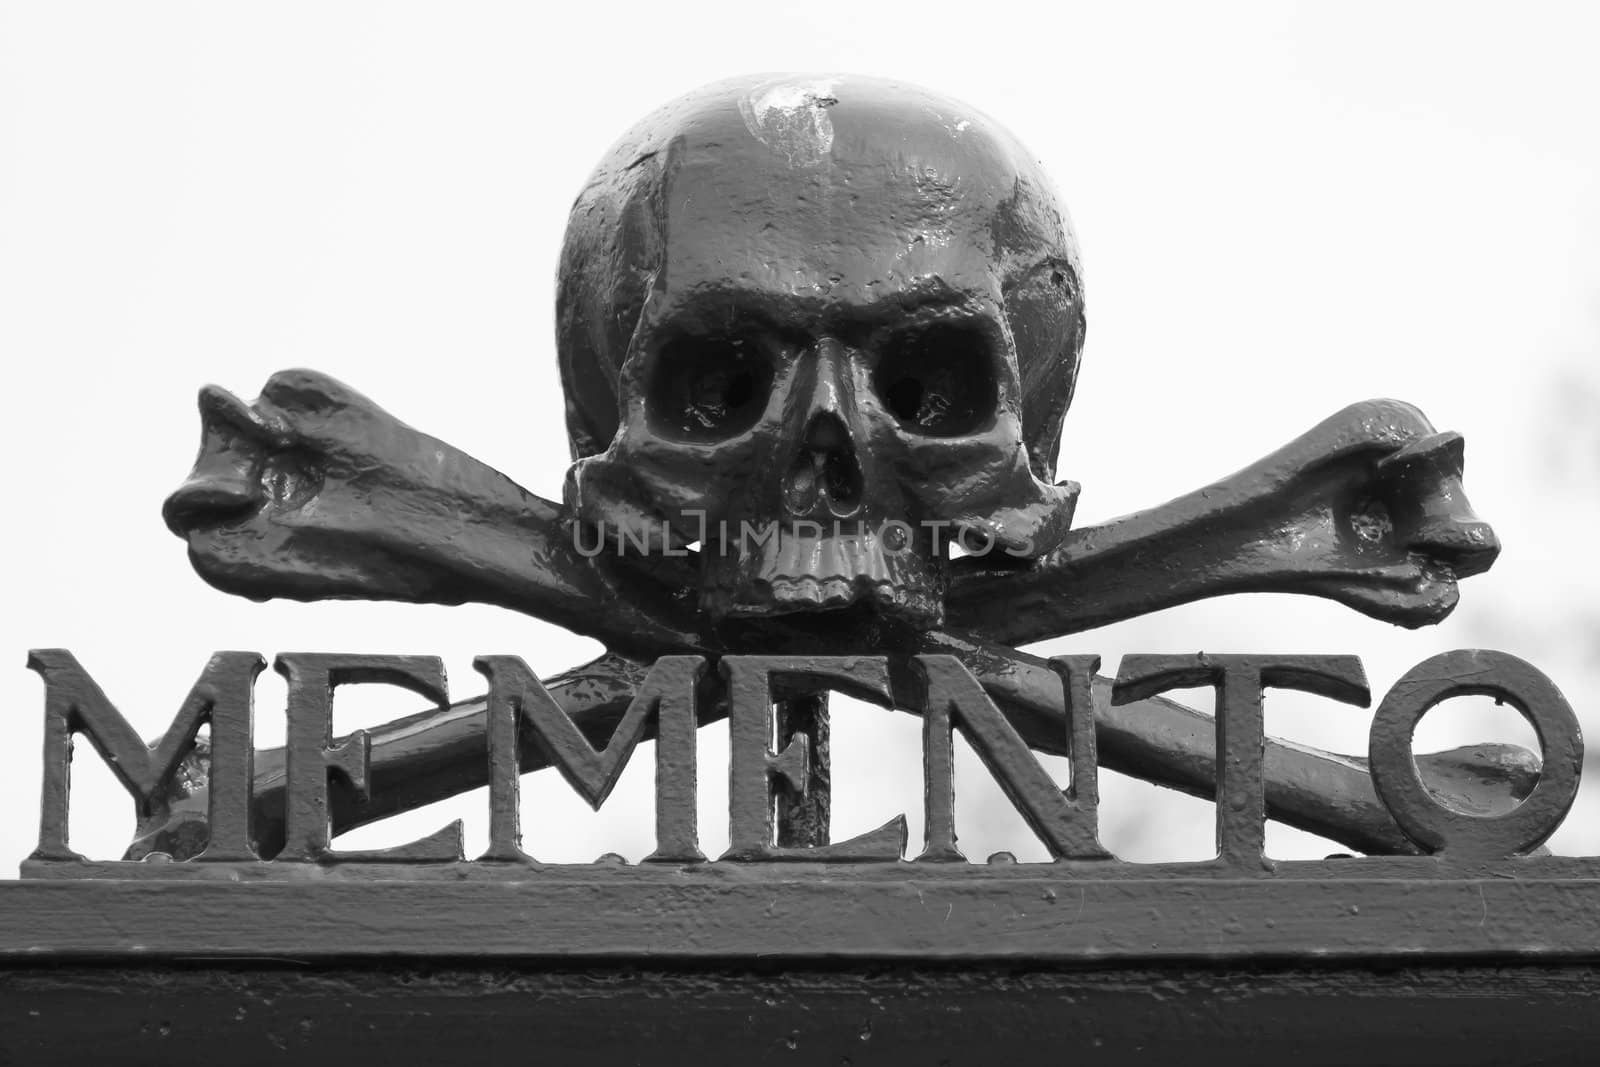 A skull at a graveyard (Memento Mori)